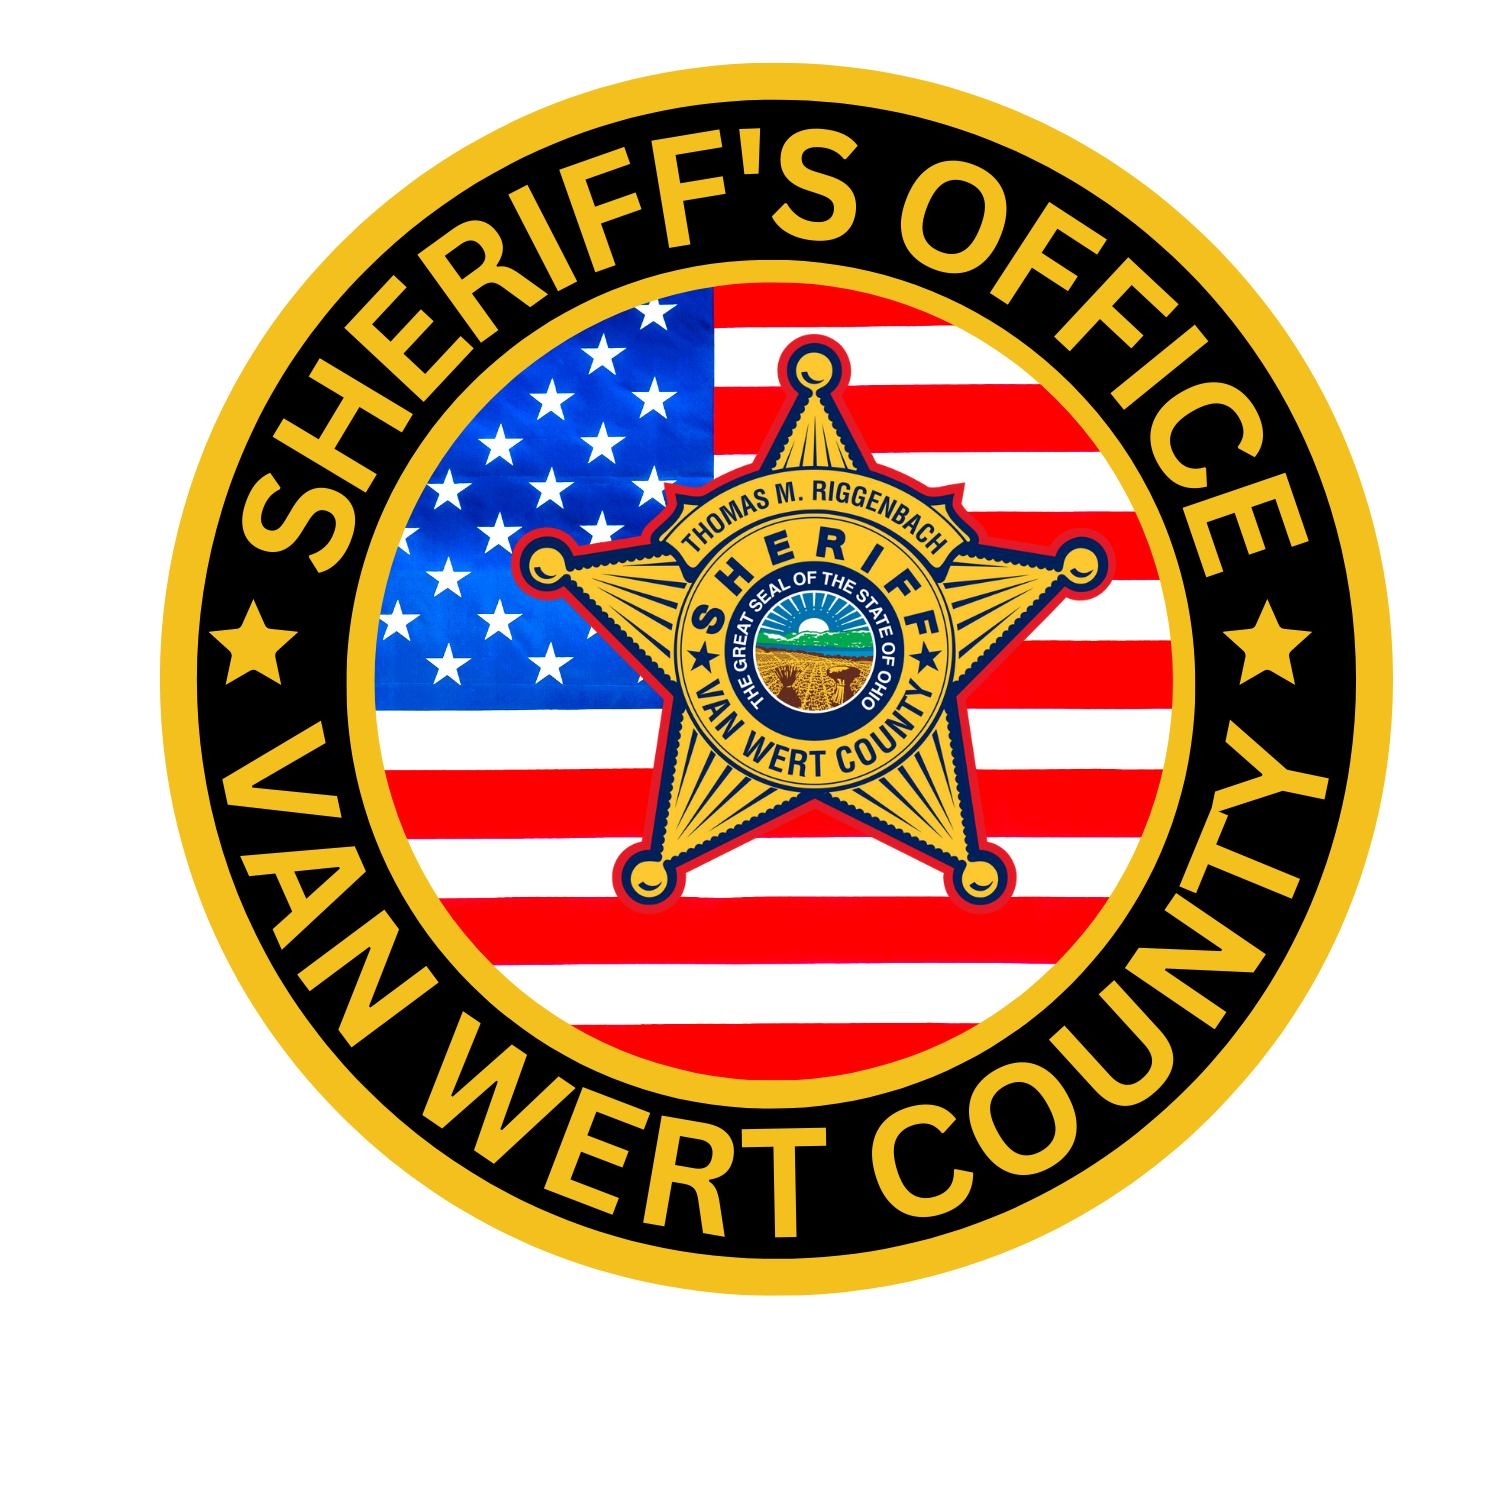 Van Wert County Sheriff’s Office